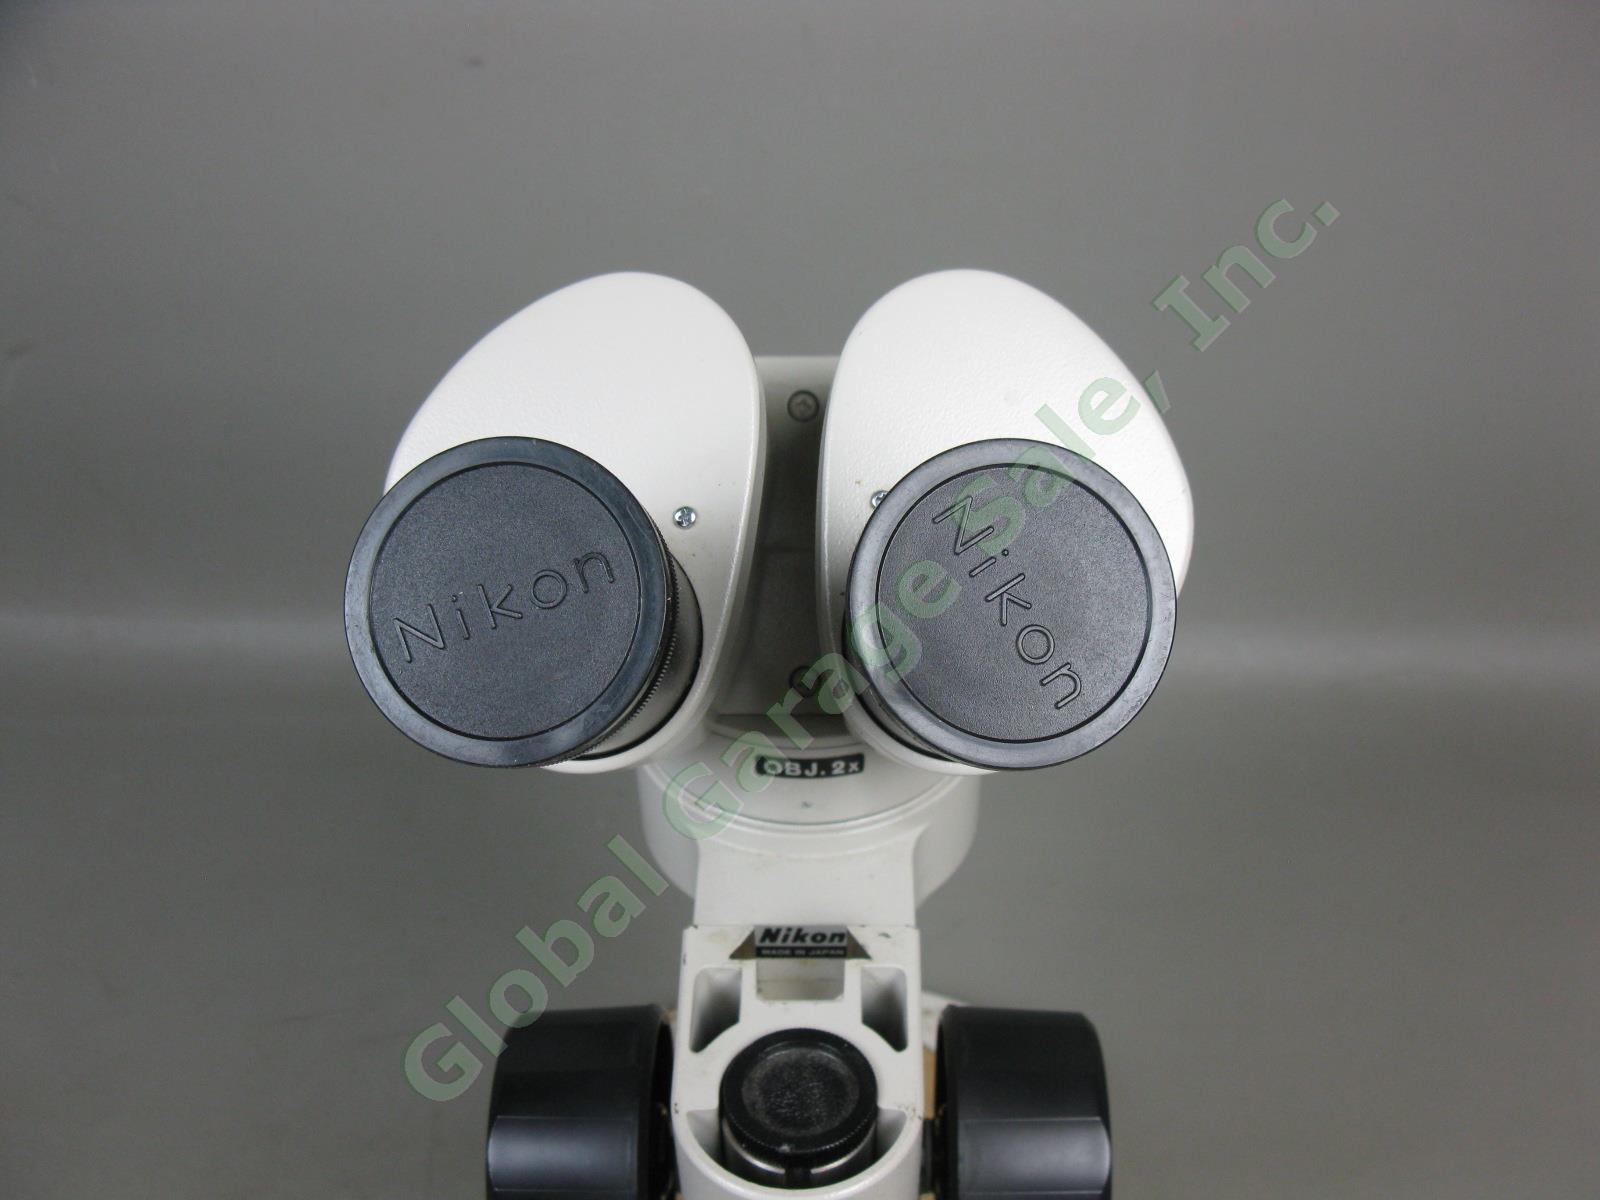 Nikon OBJ.2x Binocular Microscope W/ 10x/20 Eyepieces Stand #217542 No Reserve! 9